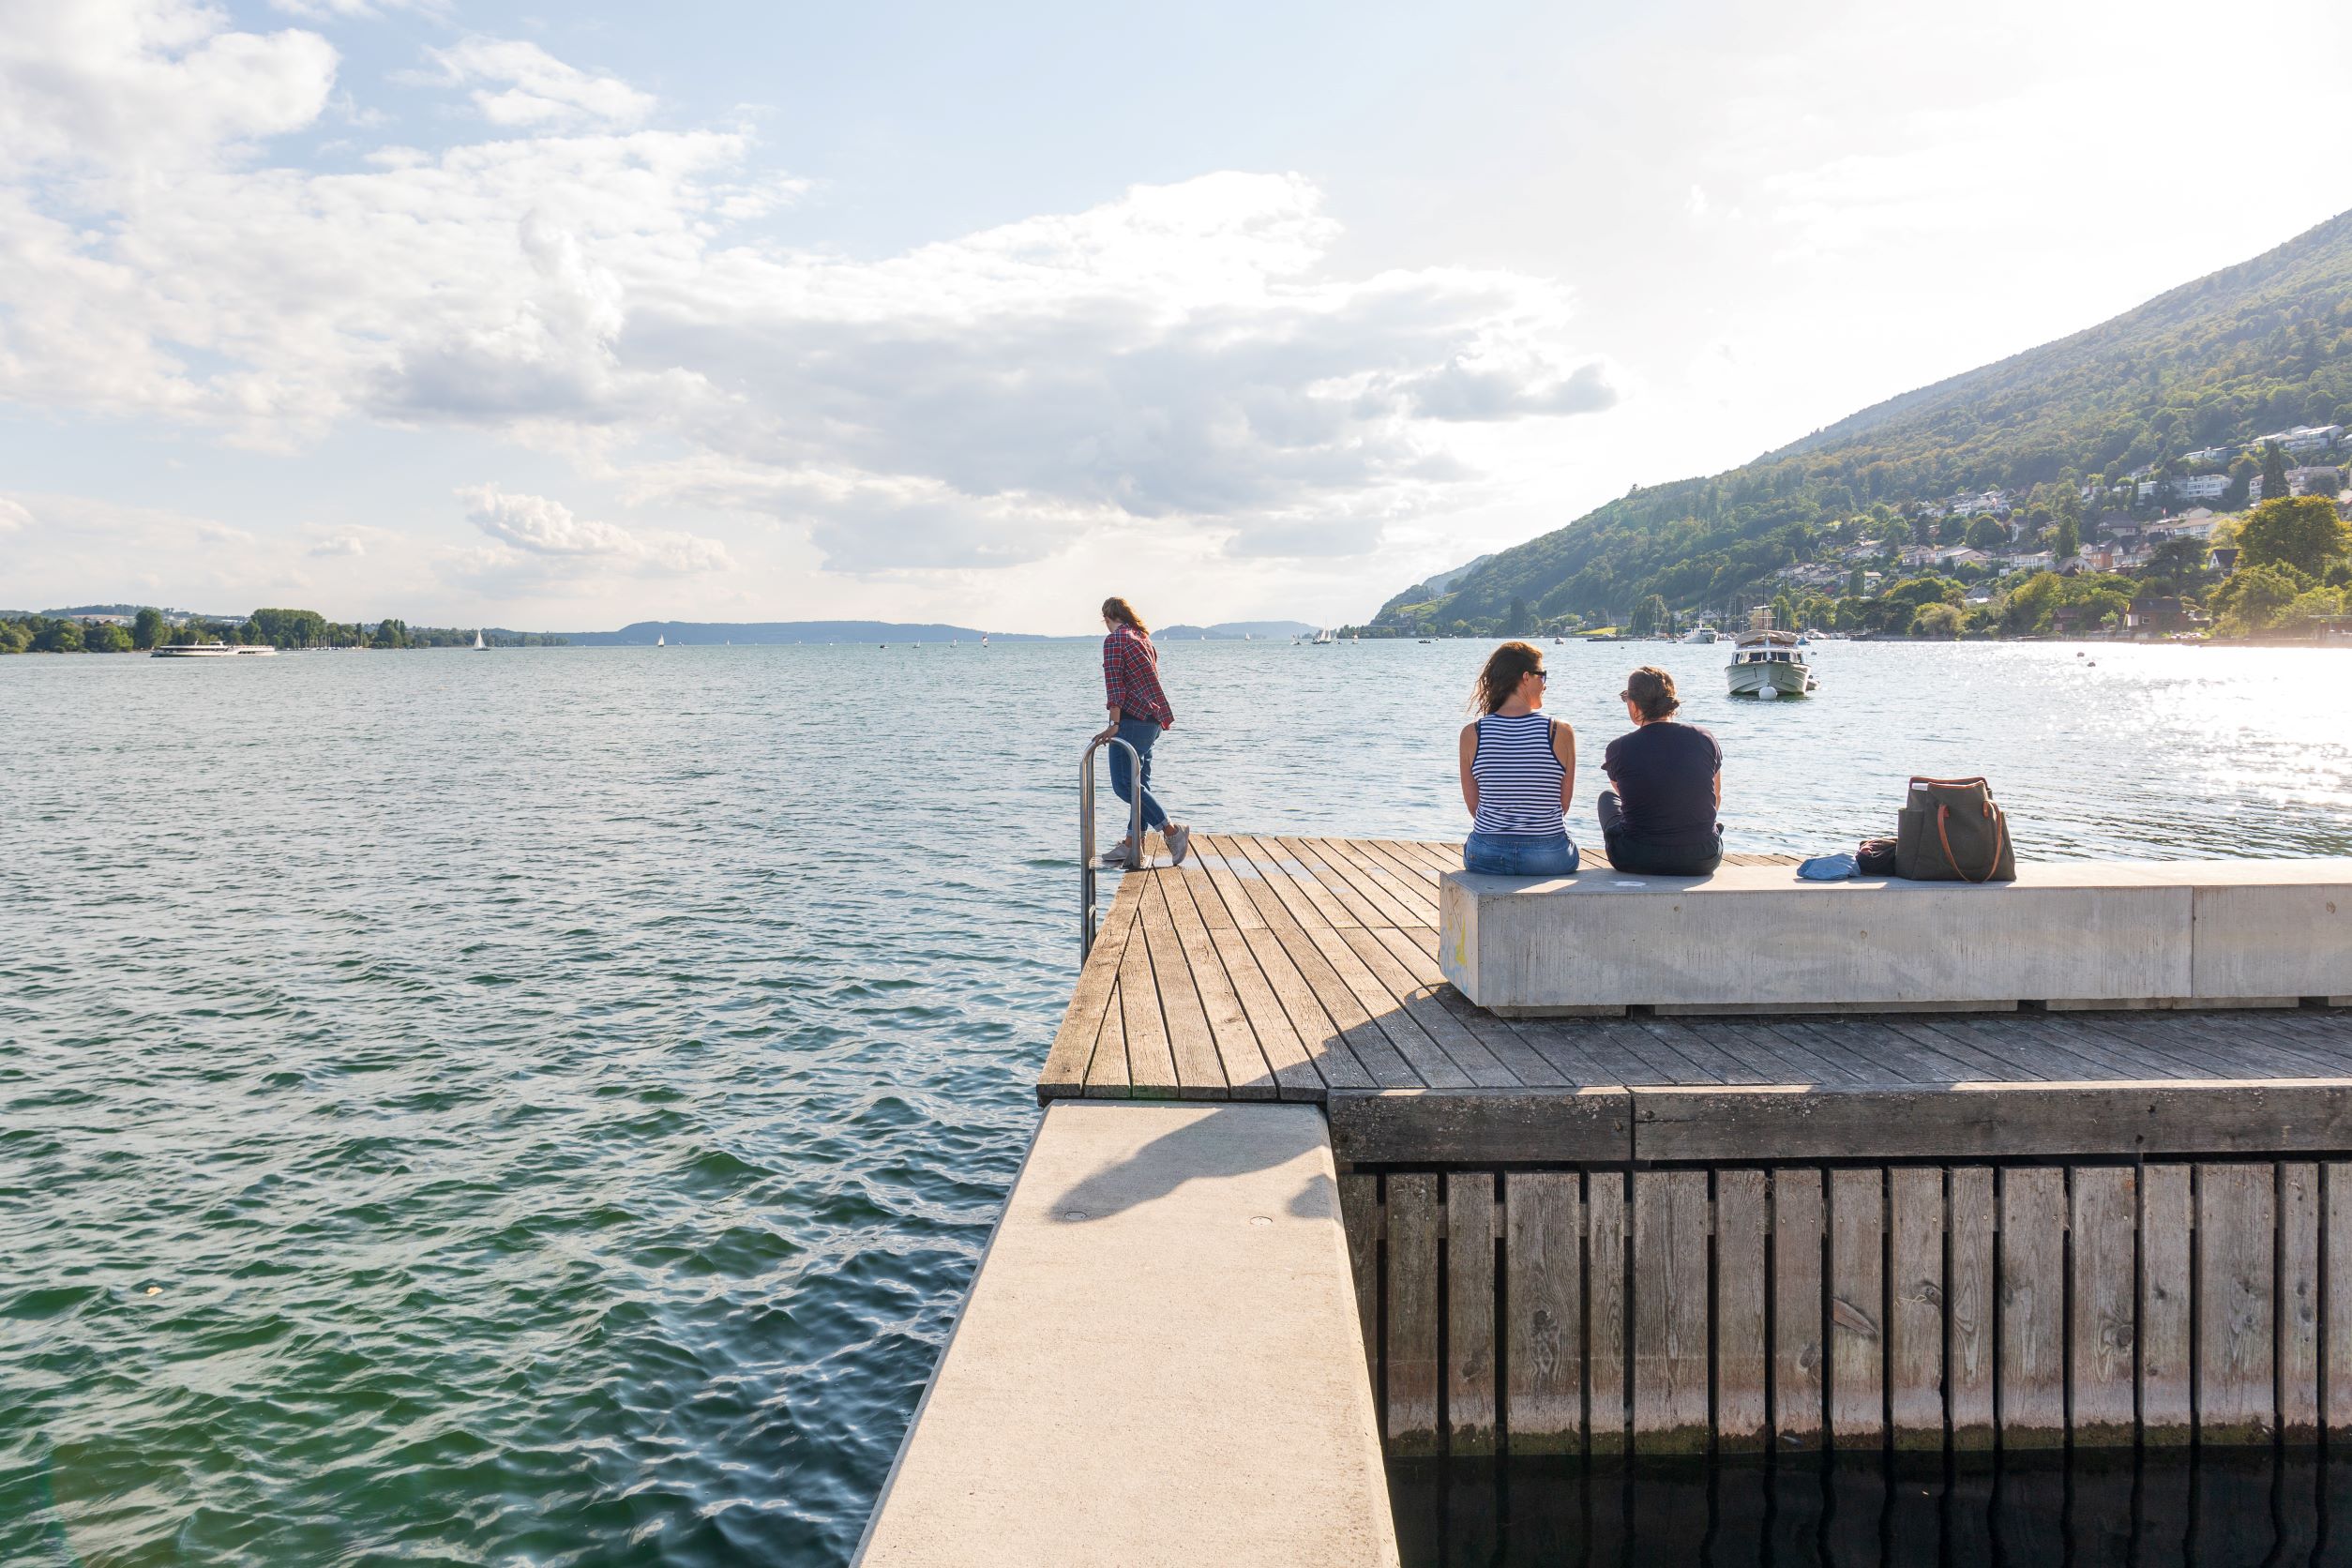 Biel, Beau Rivage, Uferweg und Freifläche (Beispiel See- und Flussufer-Projekt Tiefbauamt Kanton Bern), Bild: B. Devènes, 2021